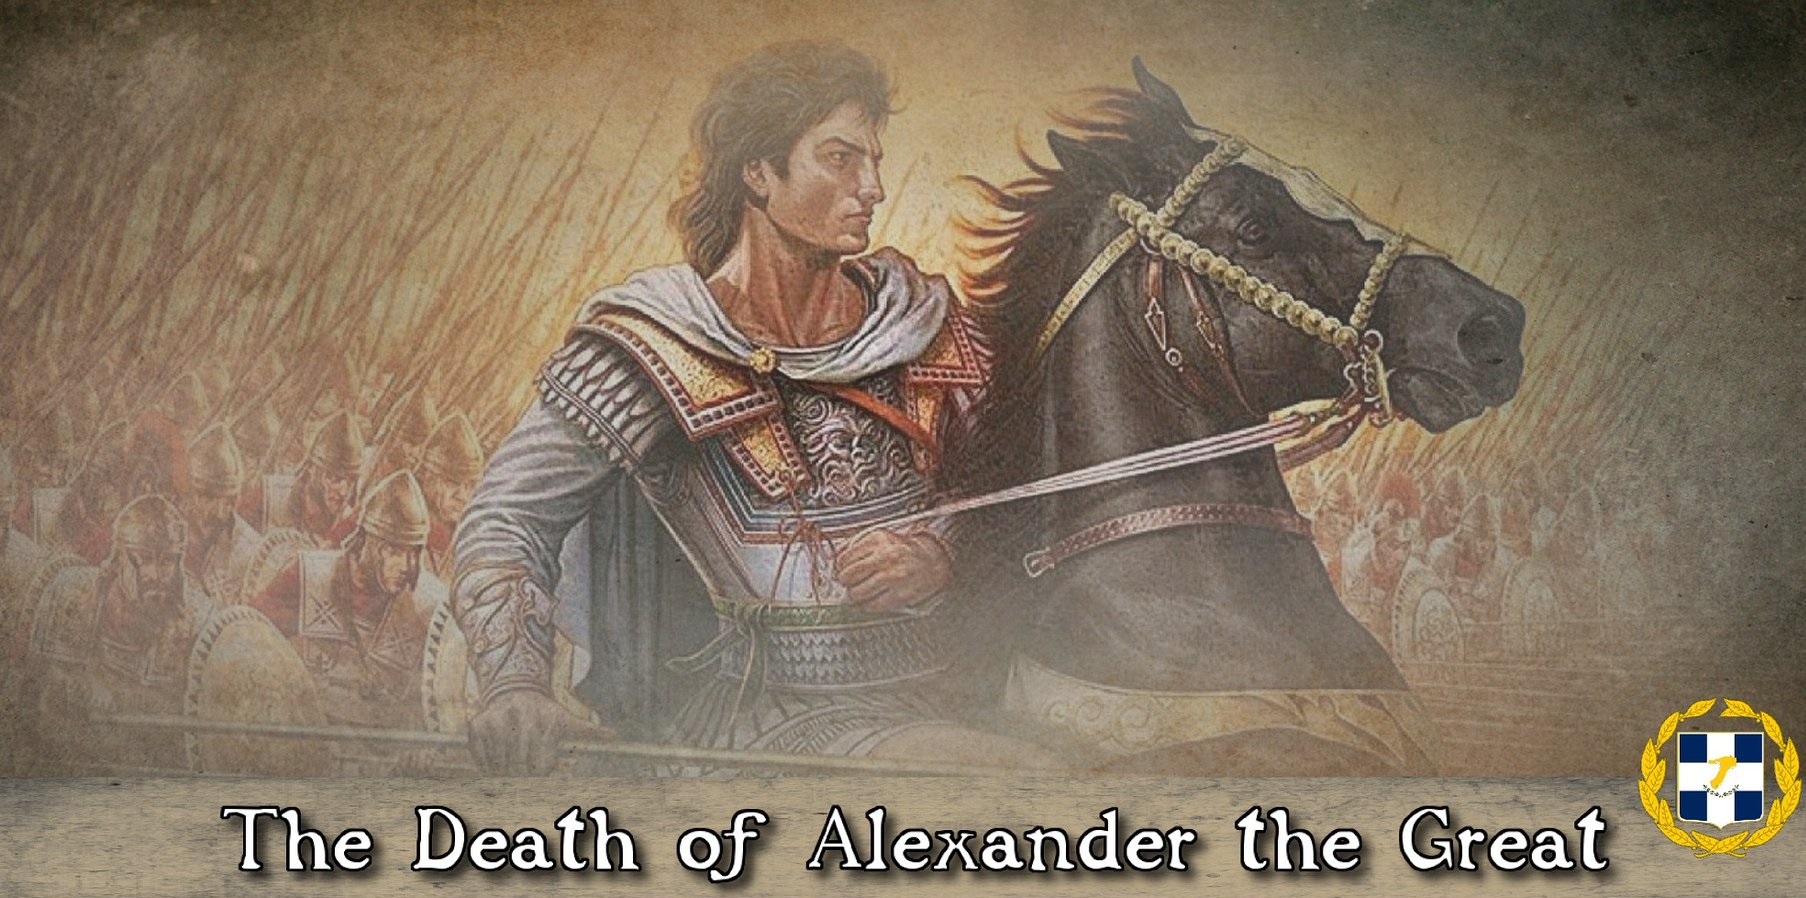 Οι ελληνορθόδοξοι της Συρίας τίμησαν τον Μέγα Αλέξανδρο στην επέτειο του θανάτου του – Στην Ελλάδα ουδείς!